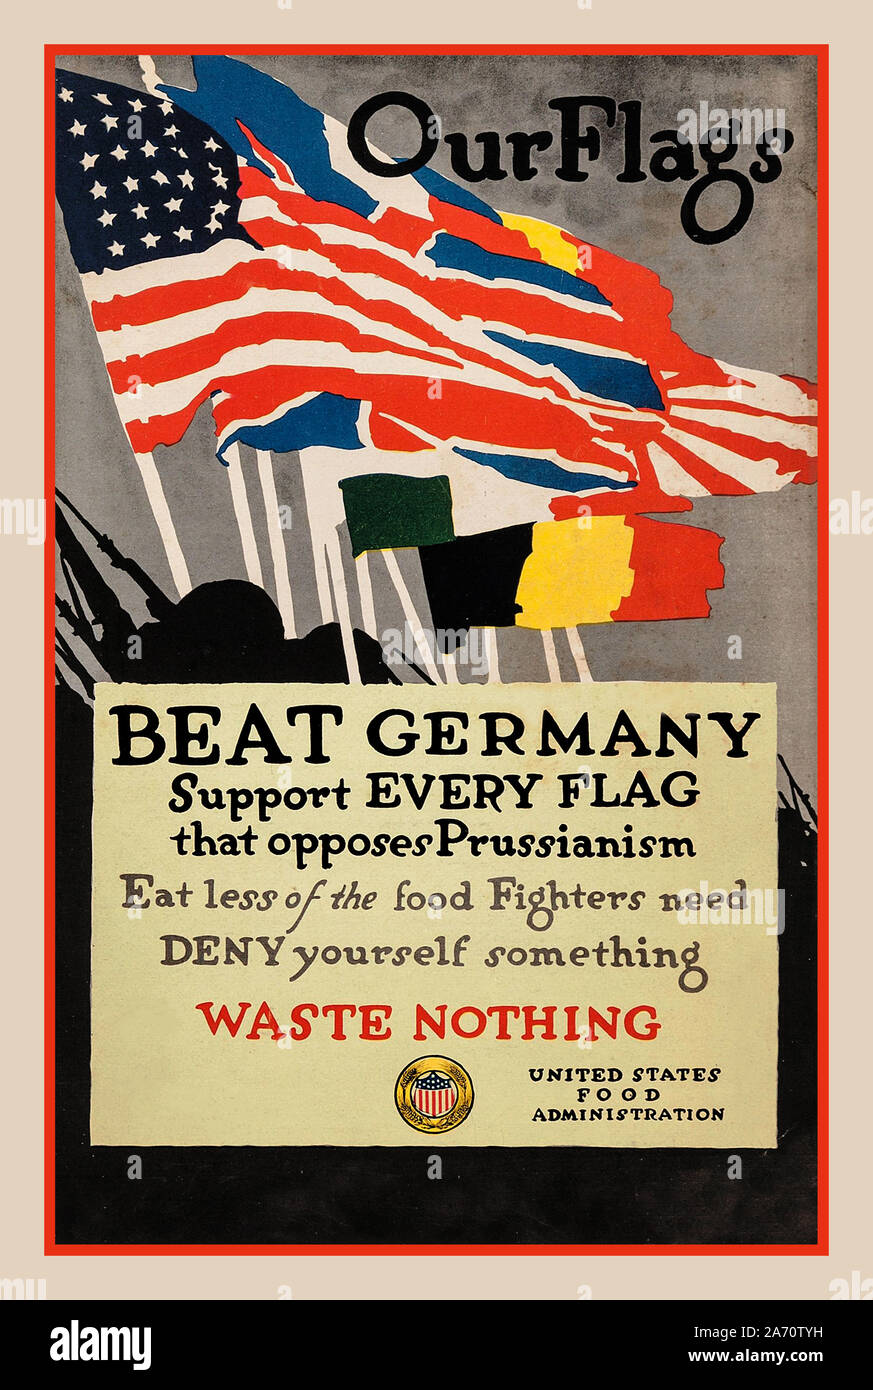 Le nostre bandiere Vintage 1918 American WW1 La Prima Guerra Mondiale la propaganda Poster da Adolph Treidler per gli Stati Uniti la somministrazione di cibo, 1918 "Le nostre bandiere.' Poster ha incoraggiato gli americani a fare sacrifici per i soldati che hanno combattuto in Francia e a sostegno di tutti i paesi che stava contro il Kaiser. "Ha battuto la Germania sostengono ogni bandiera" Foto Stock